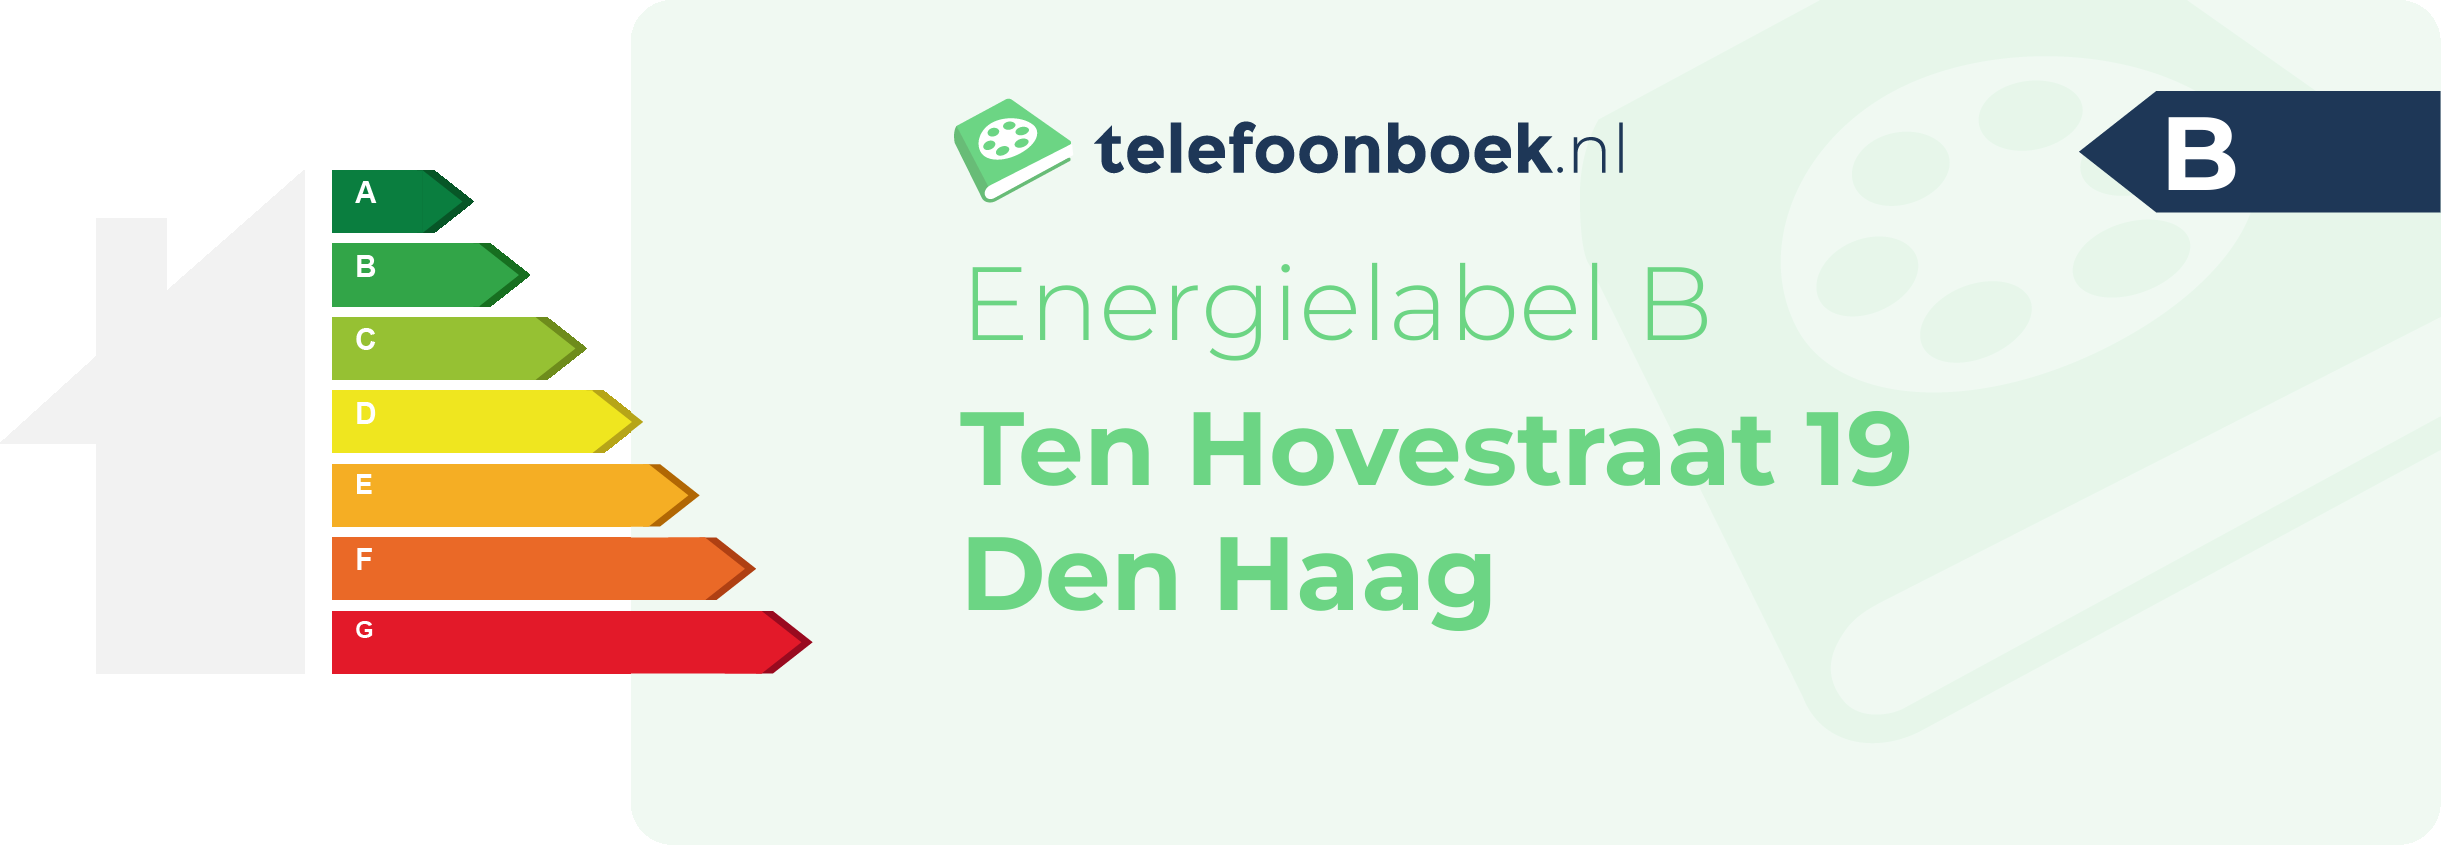 Energielabel Ten Hovestraat 19 Den Haag